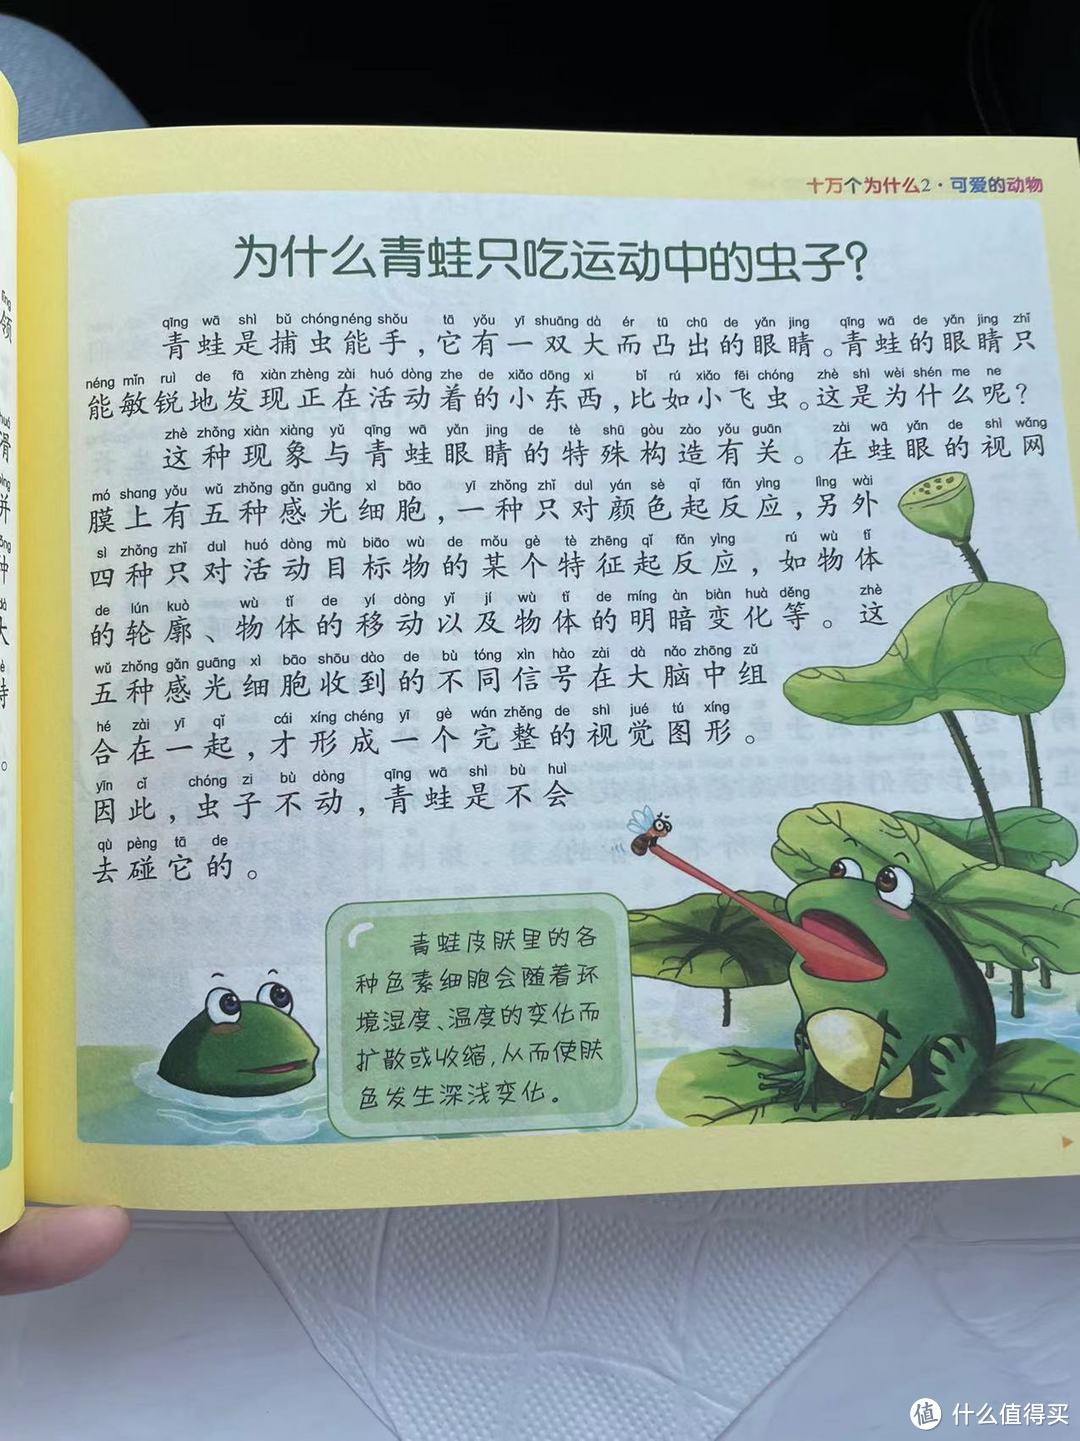 十万个为什么之为什么青蛙只吃运动中的虫子?